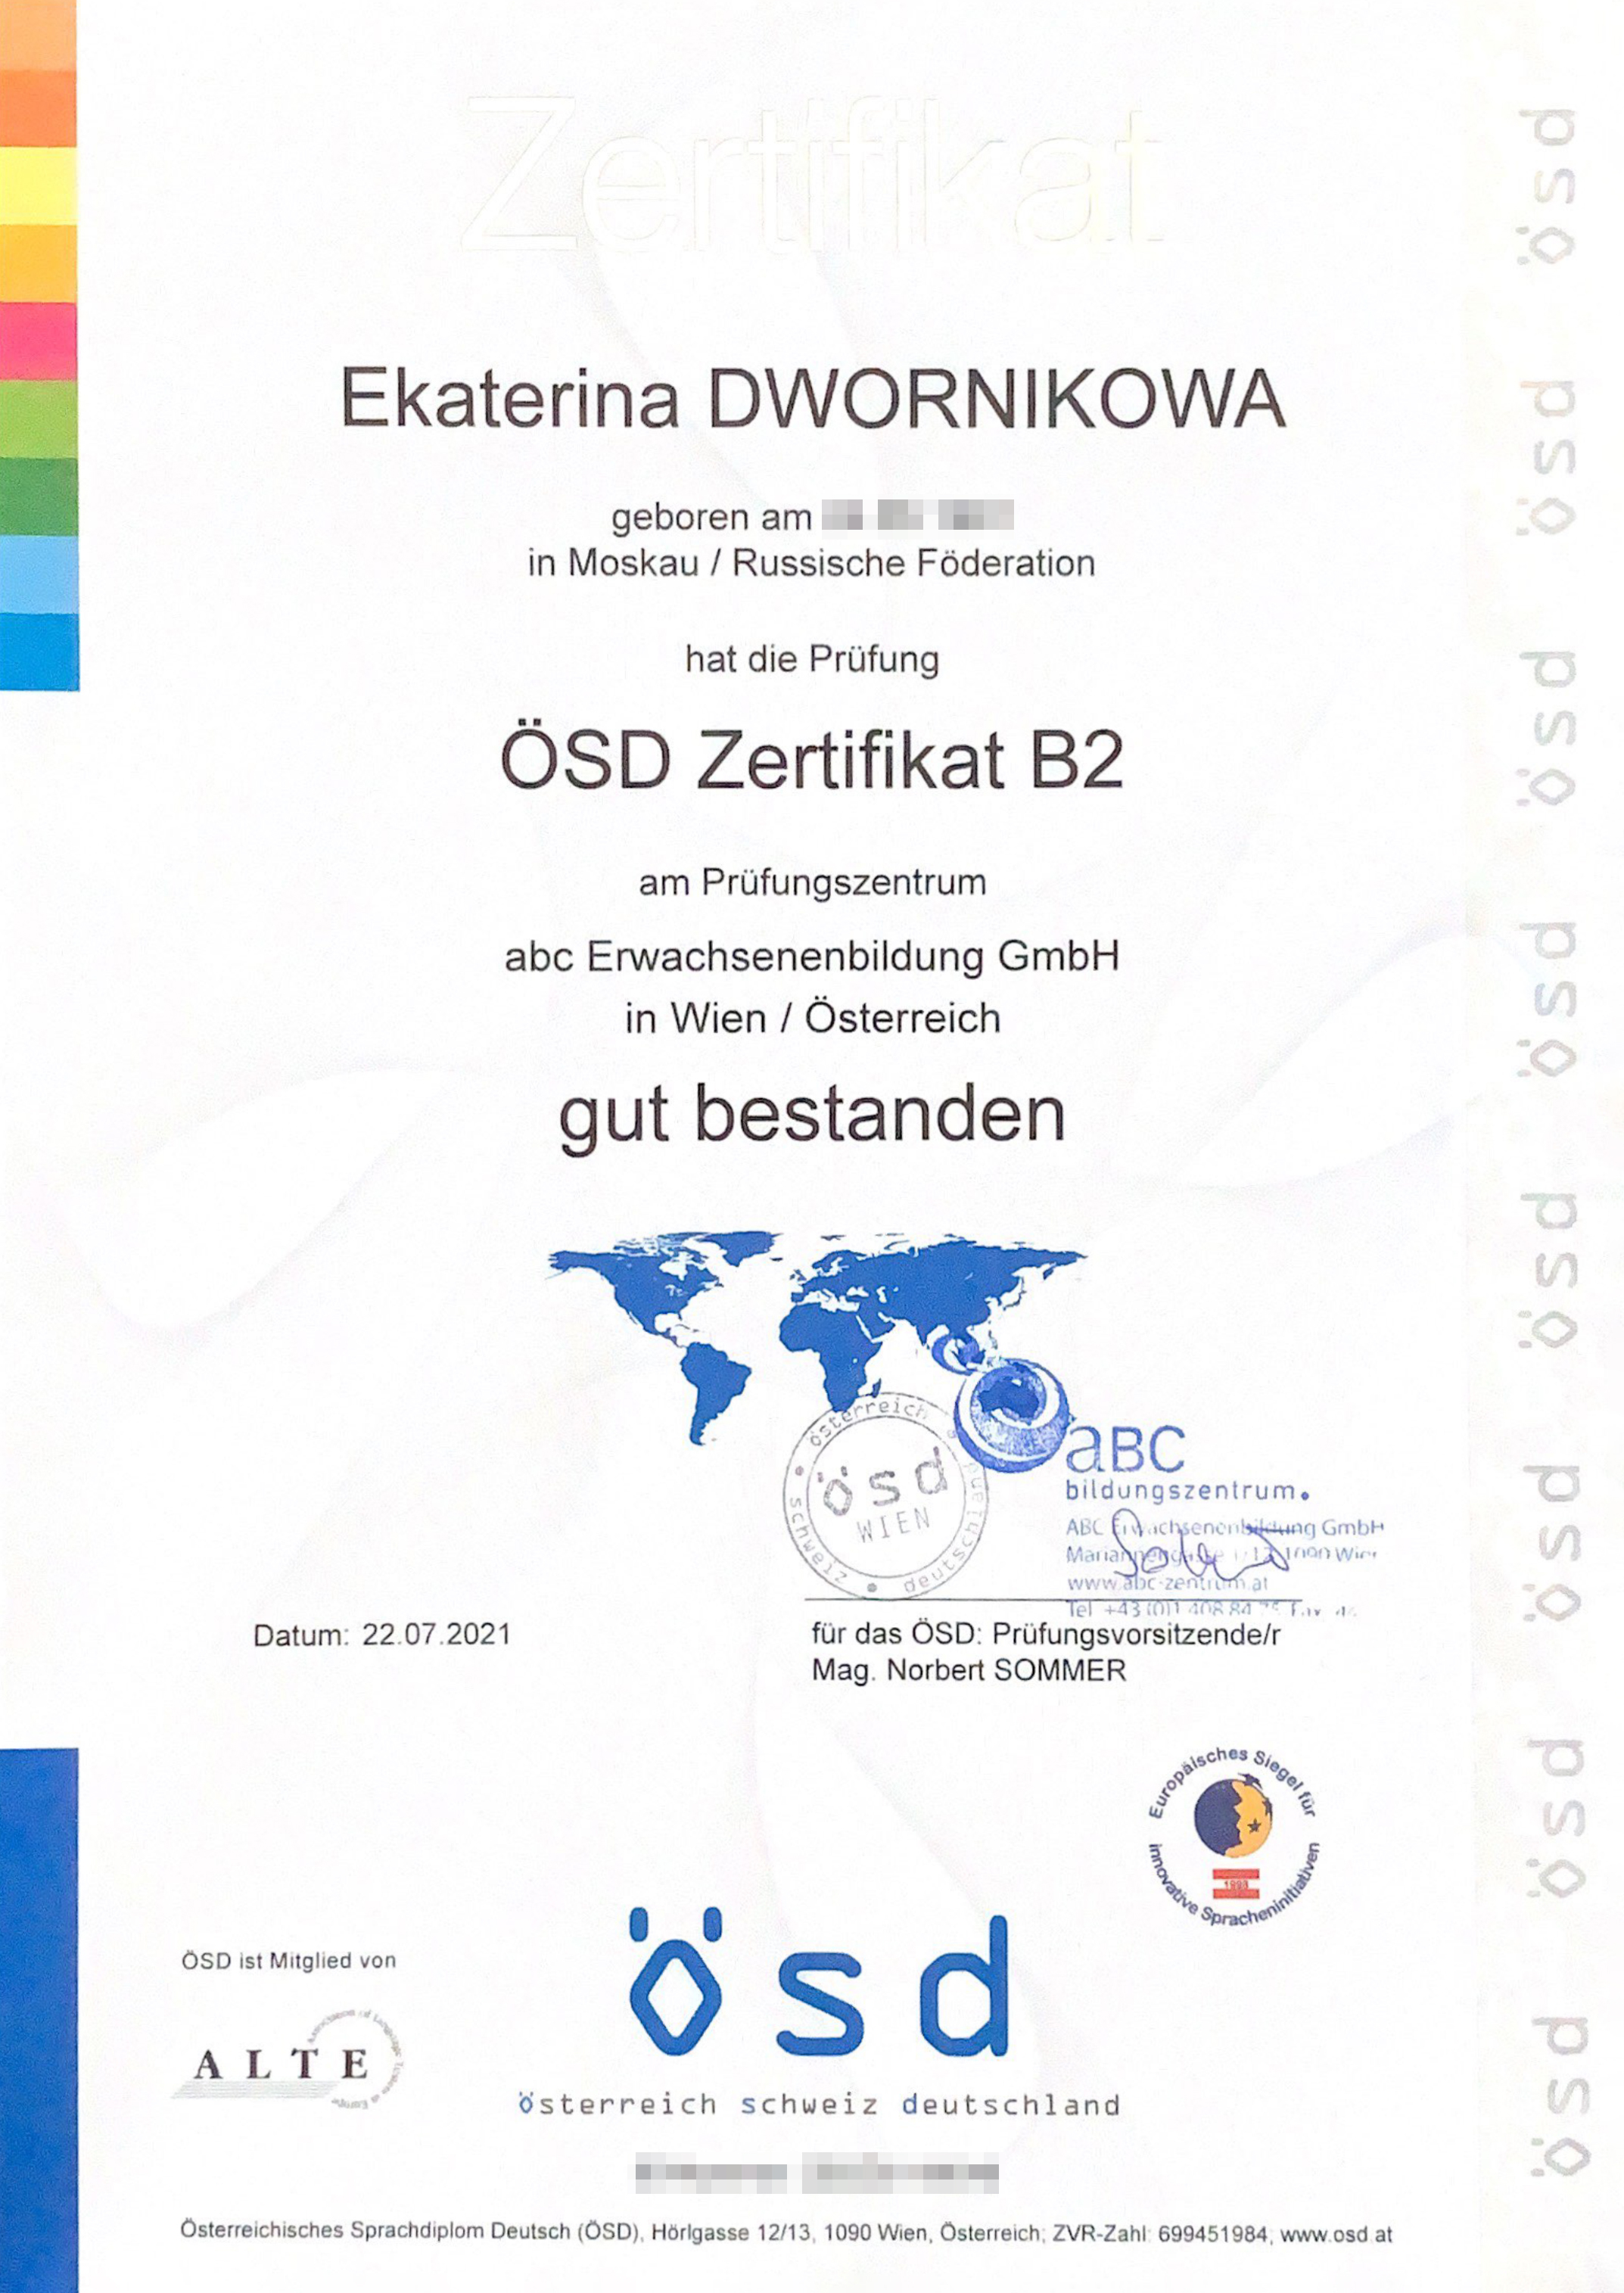 Мой сертификат ÖSD. Я набрала 79 баллов из 100 — это gut bestanden